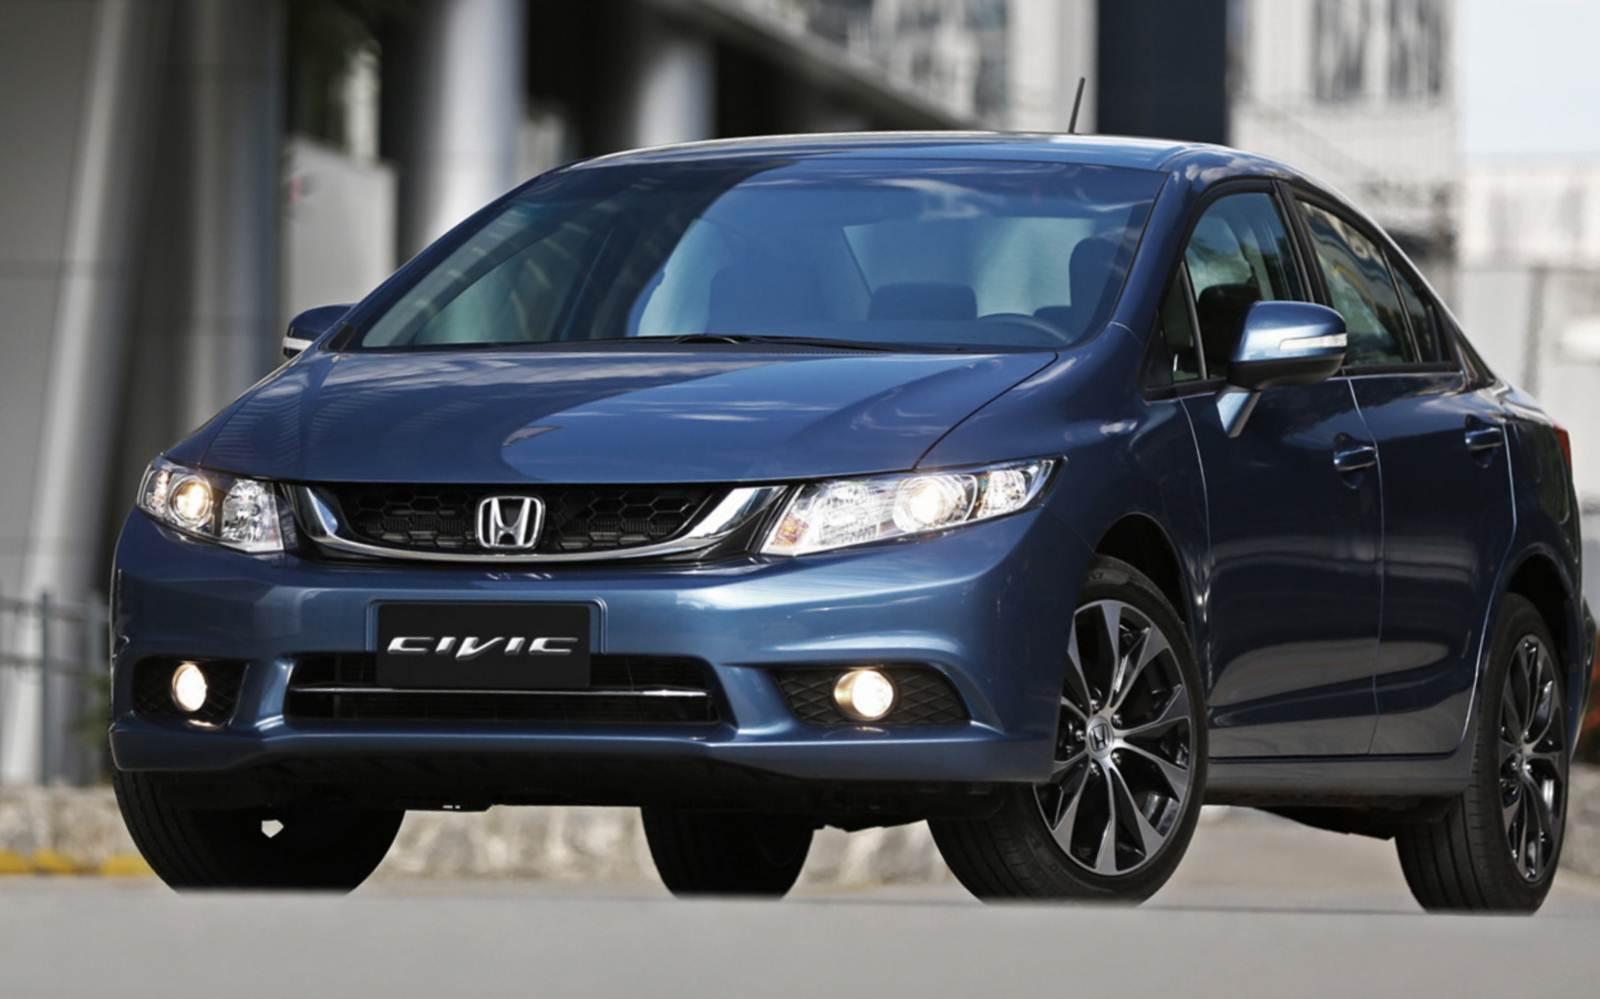 Novo Honda Civic 2015 - Preço, Consumo, Ficha técnica